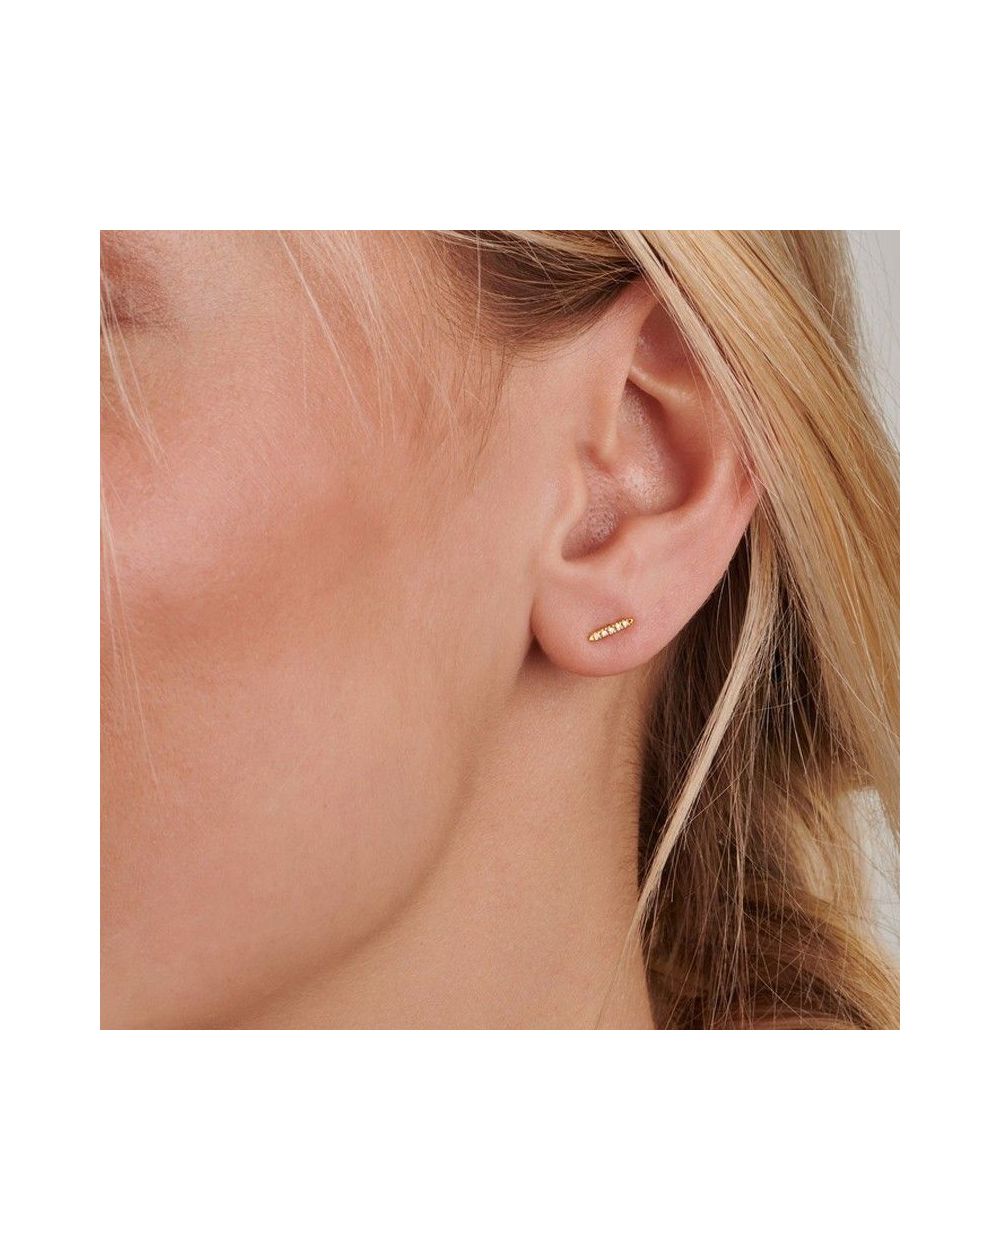 Twinkle earring (1 piece) - 3 diamonds